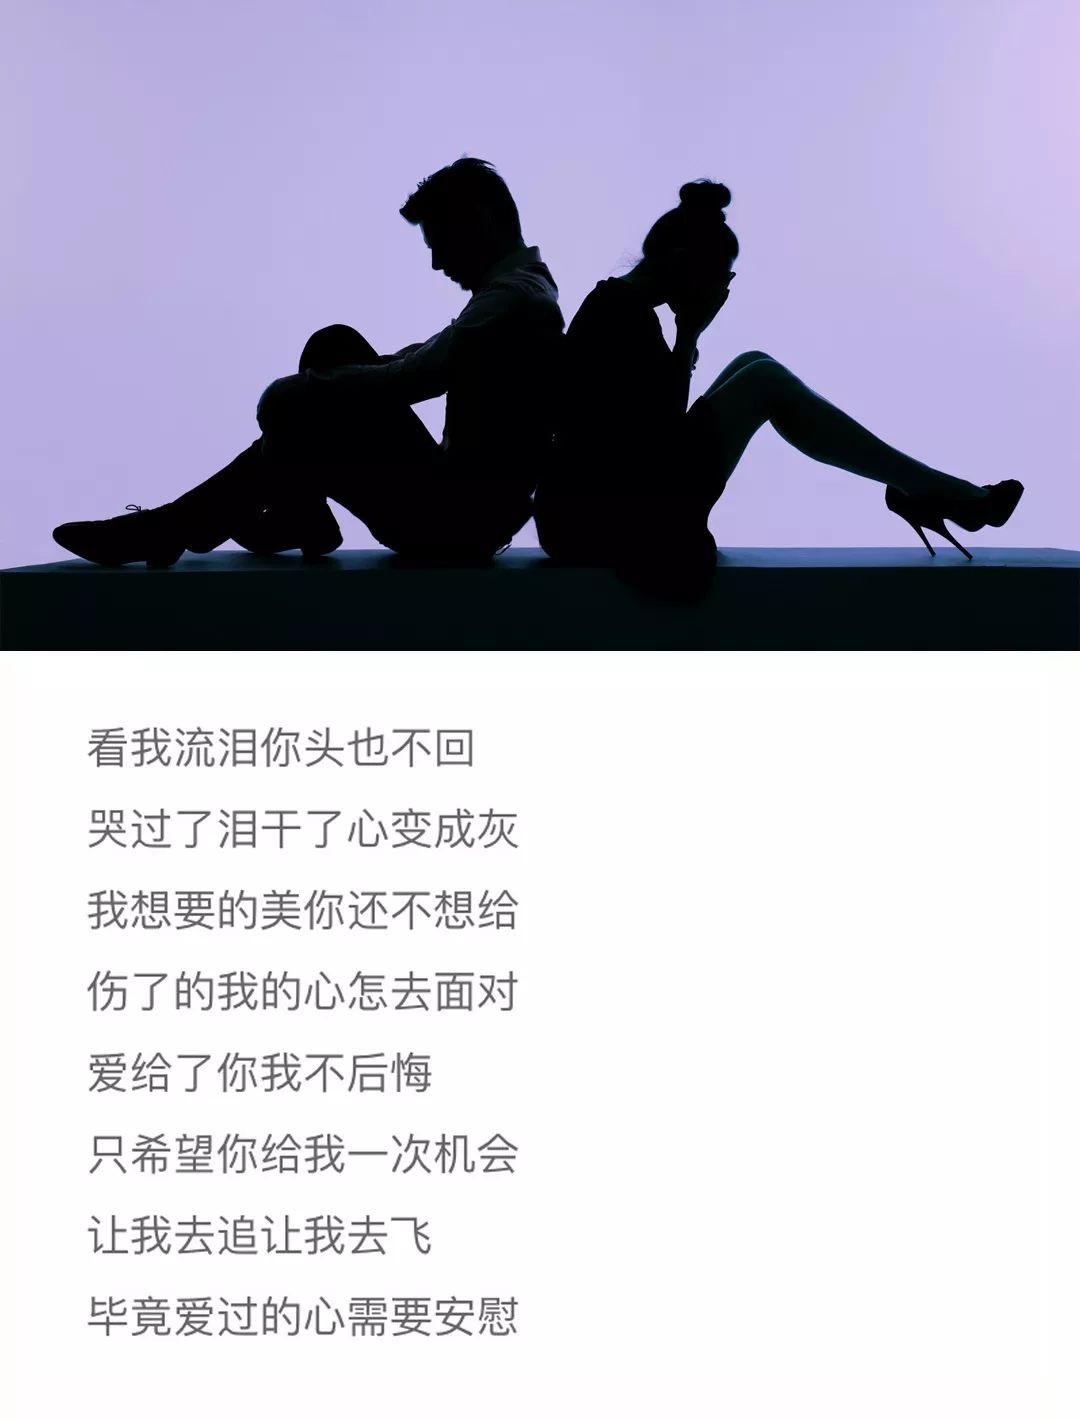 中国的情歌王子排行榜_娱乐圈中“情歌王子”,哪一位的歌,曾经唱入到了你的内心